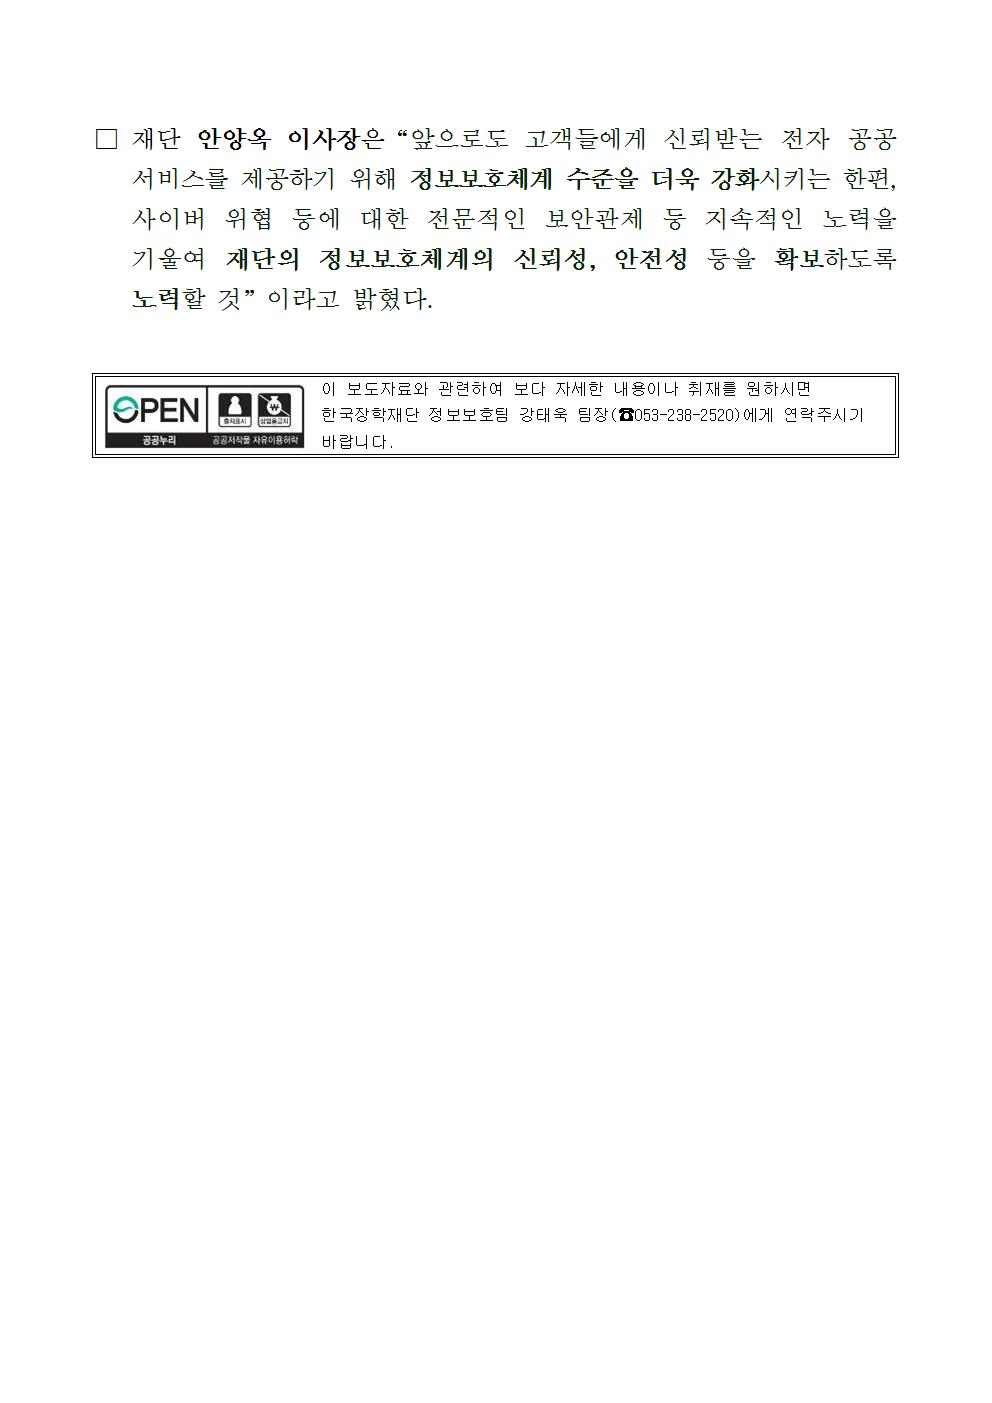 04-09(월)[보도자료] 한국장학재단, 정보보호 관리체계 인증 획득002.jpg